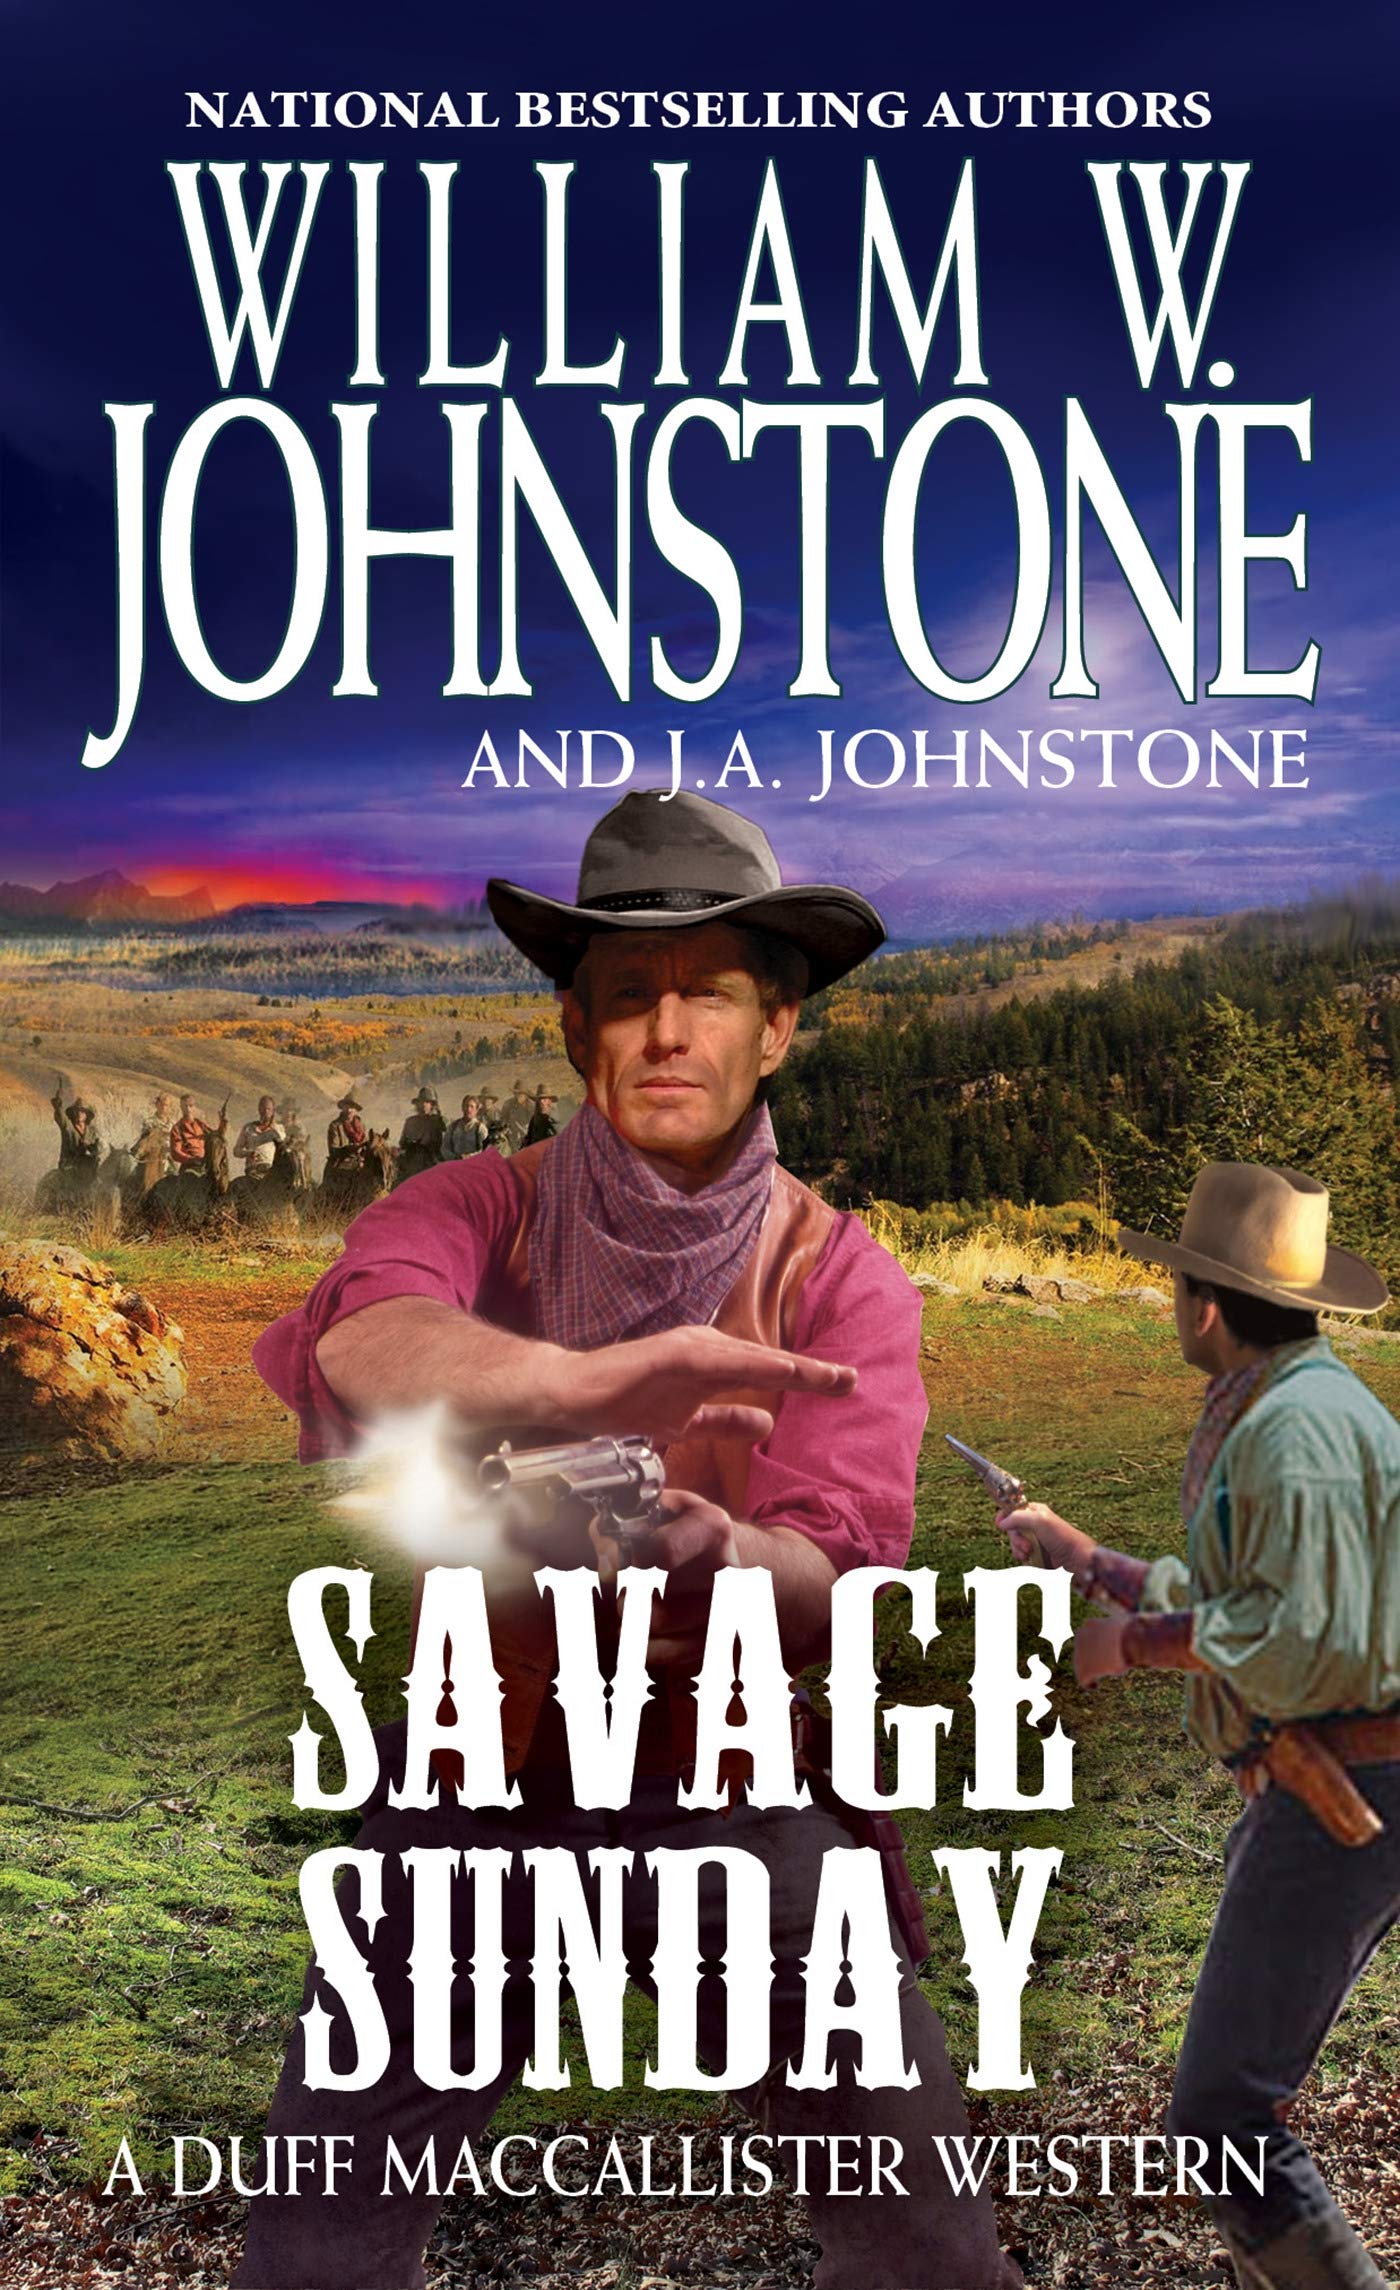 Savage Sunday - SureShot Books Publishing LLC